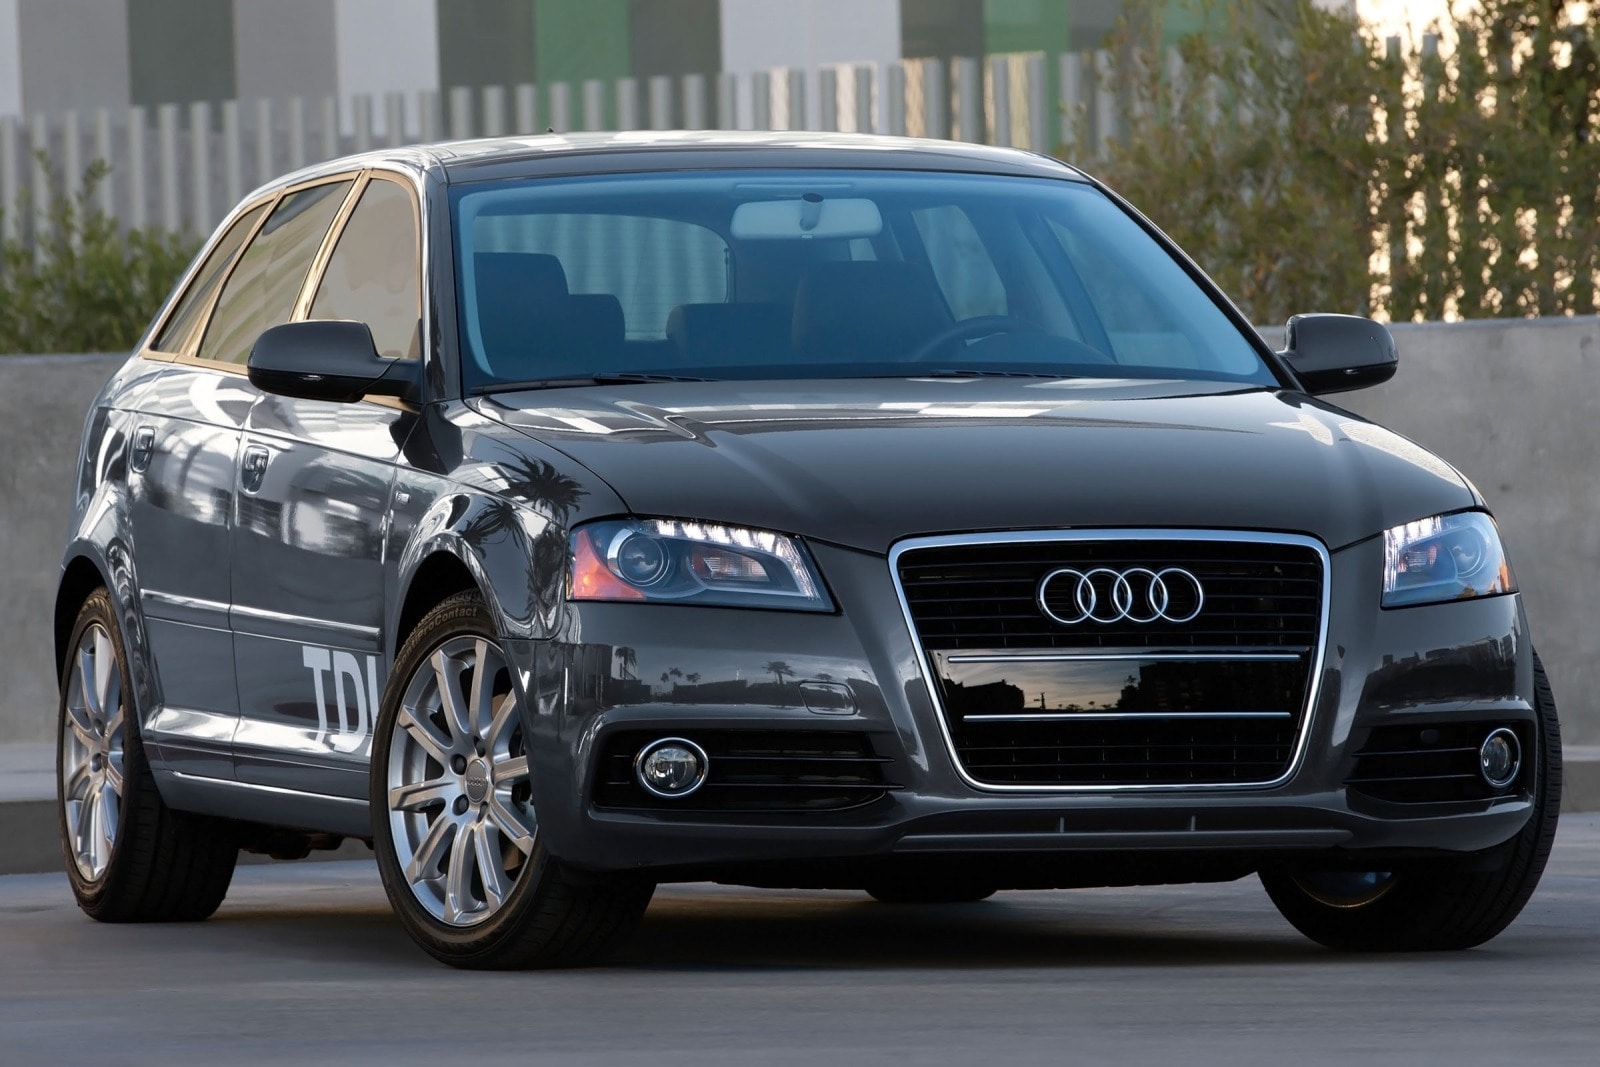 2012 Audi A3 Review & Ratings | Edmunds